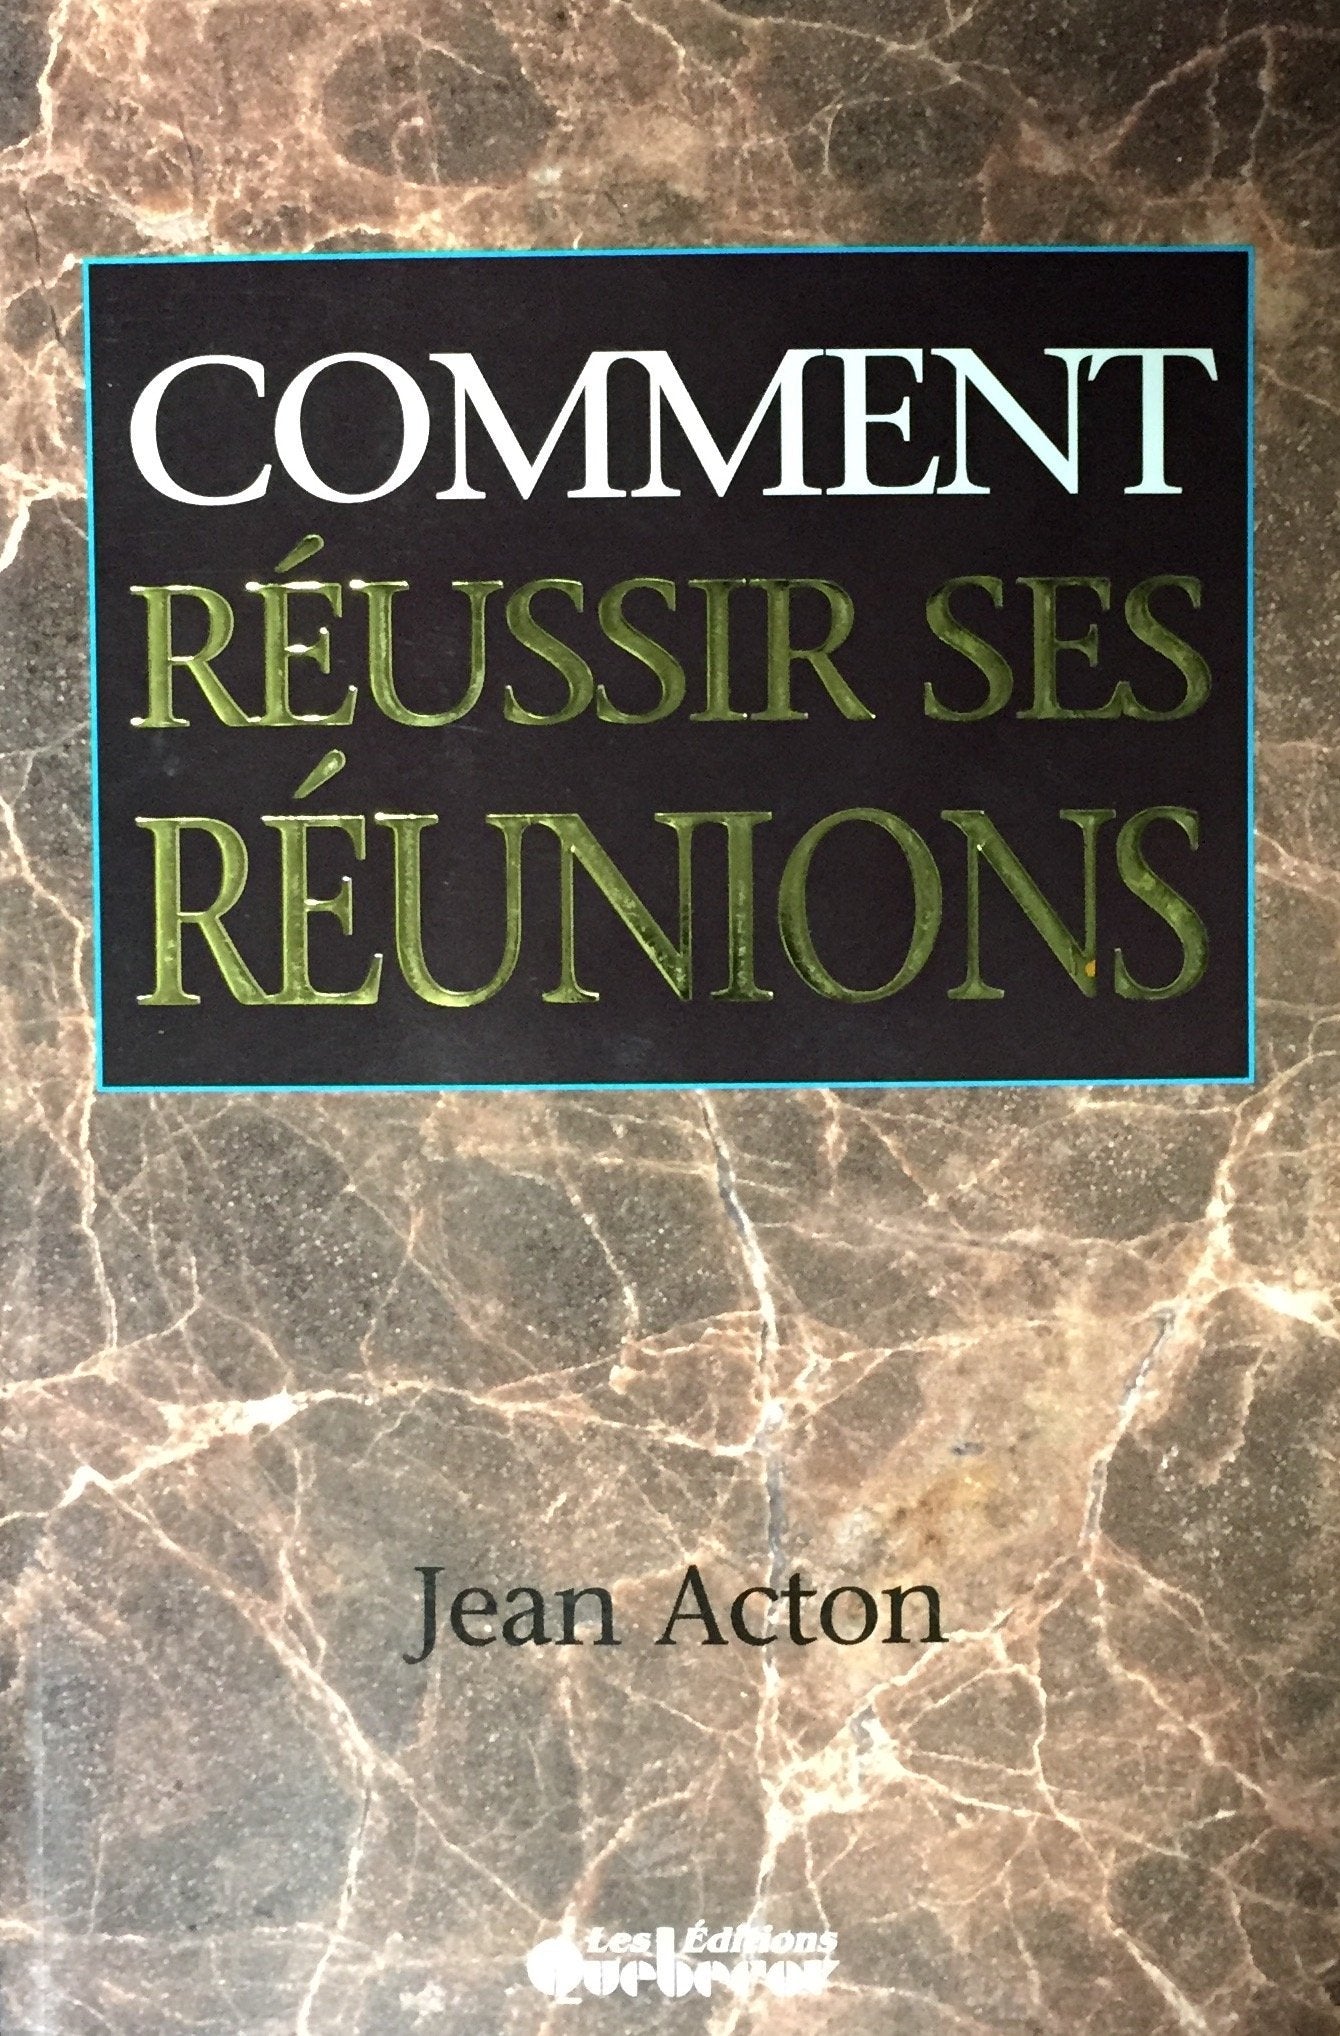 Livre ISBN 2890899799 Comment réussir ses réunions (Jean Acton)